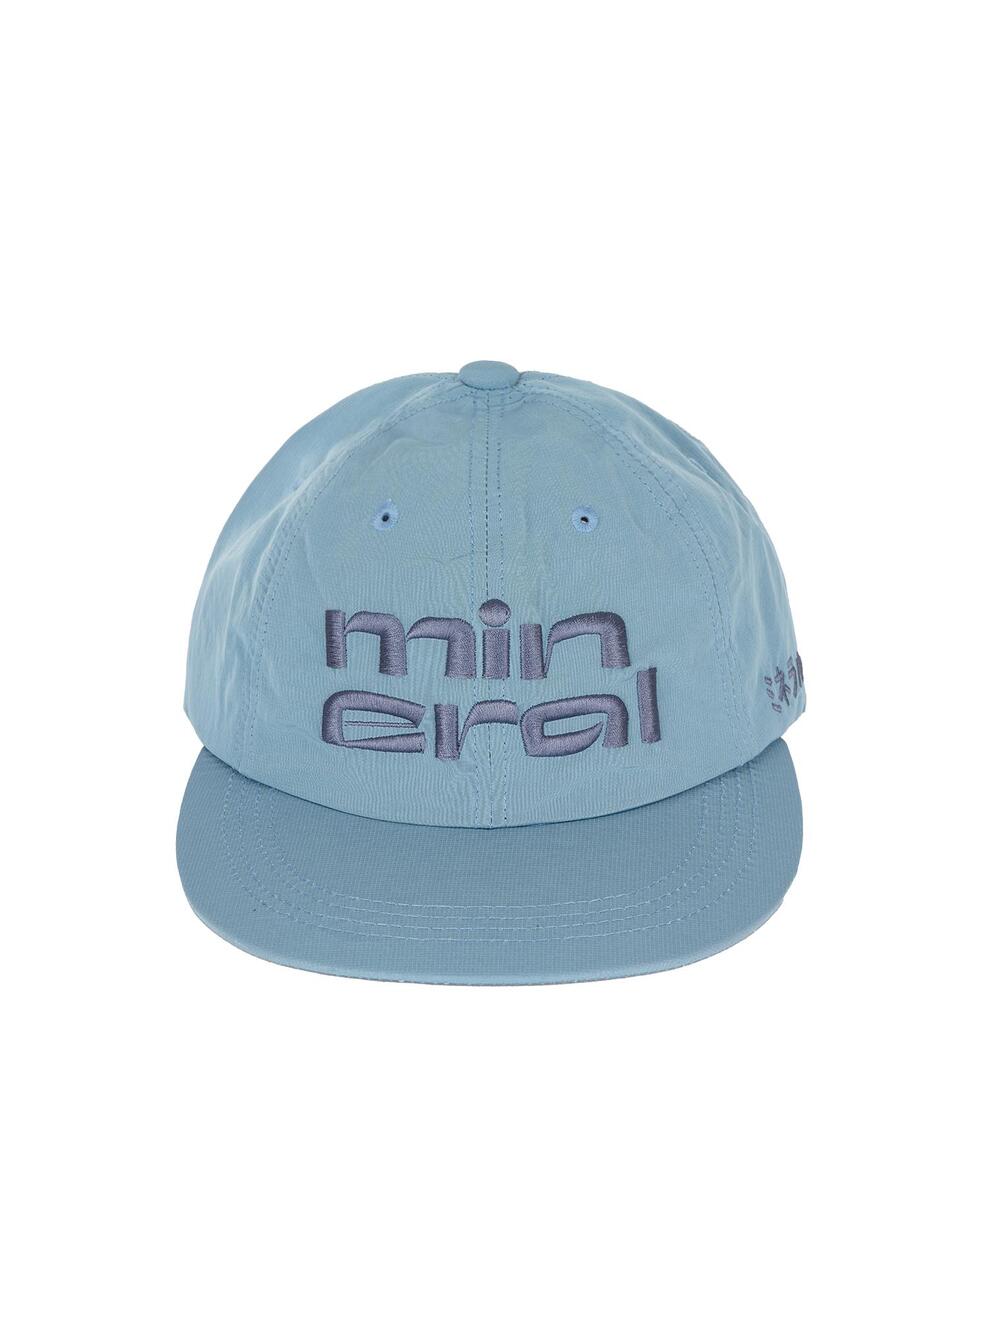 Mineral Logo cap - Blue Grey